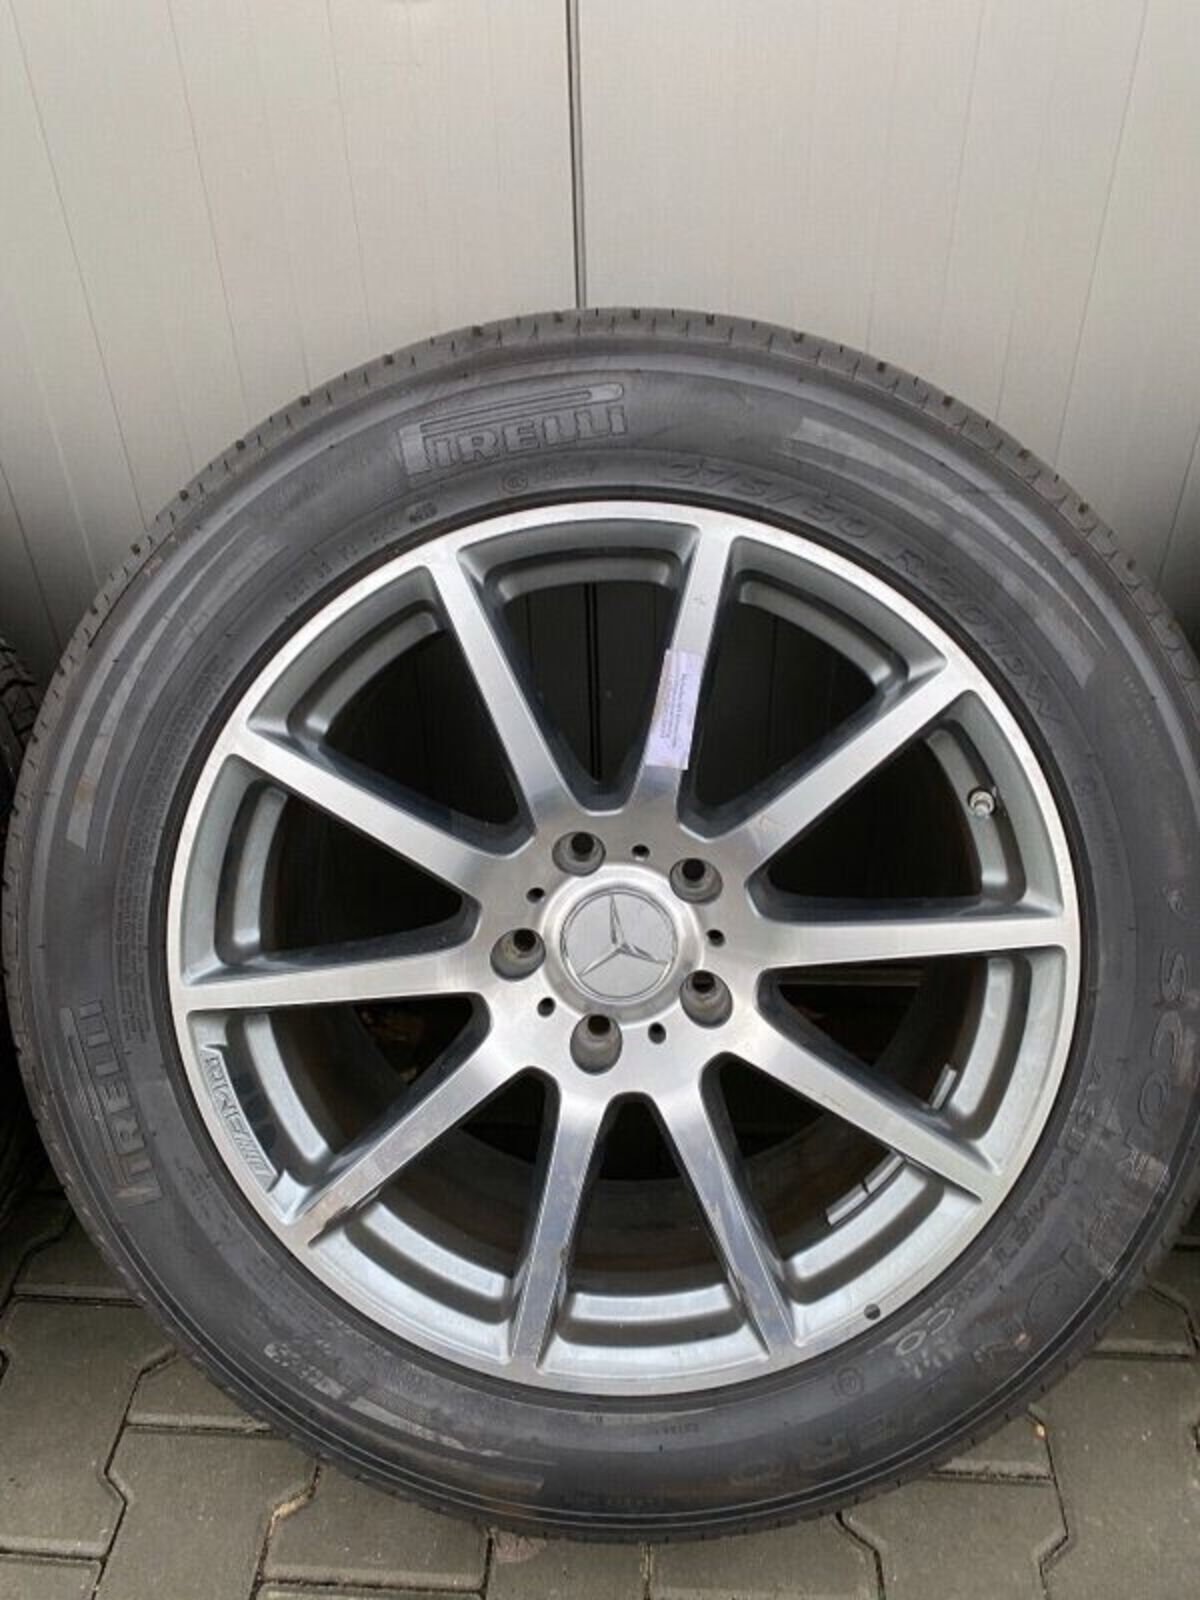 MERCEDES G63 G KLASSE Rader satz wheels set 20 inch 354830089339 6